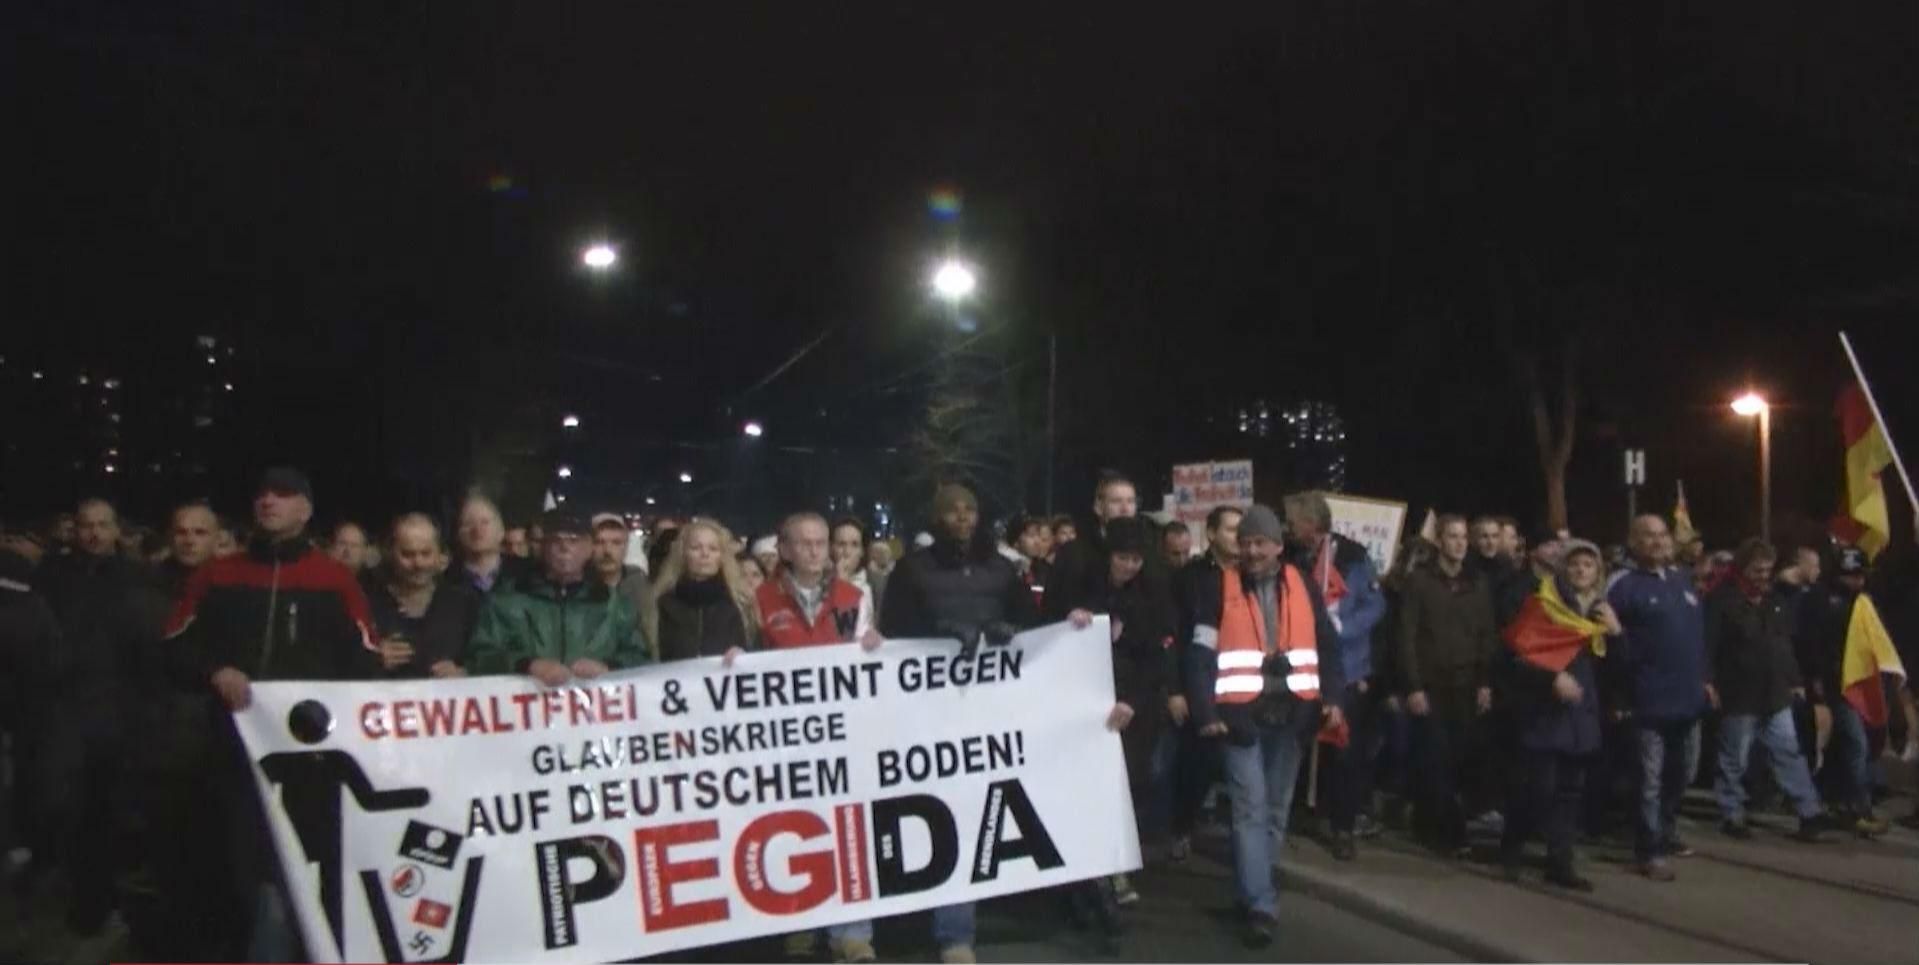 Німці вийшли на антиісламську демонстрацію